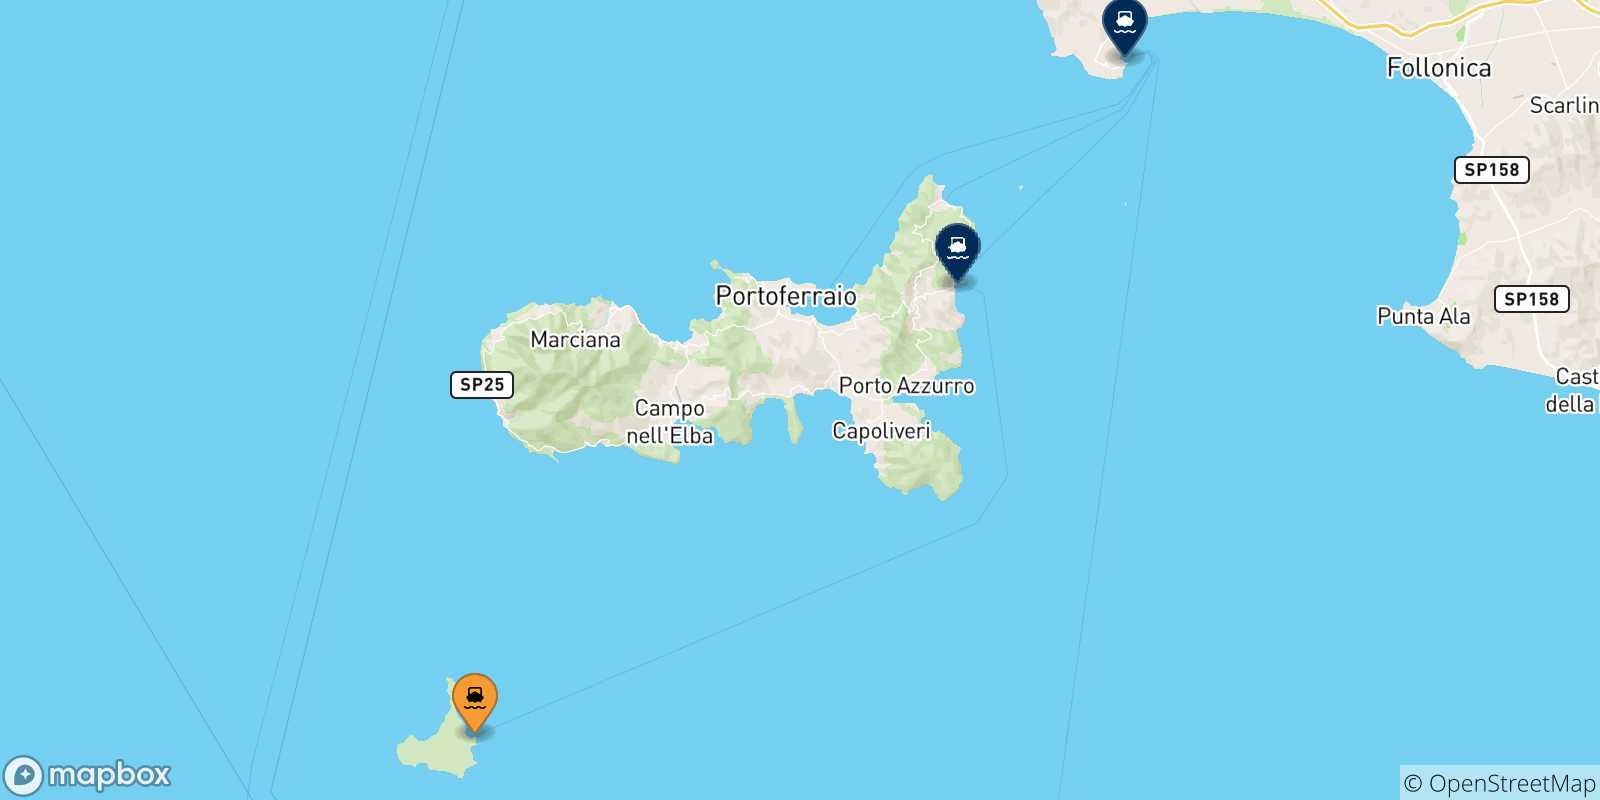 Mappa delle destinazioni raggiungibili dall' Isola Di Pianosa